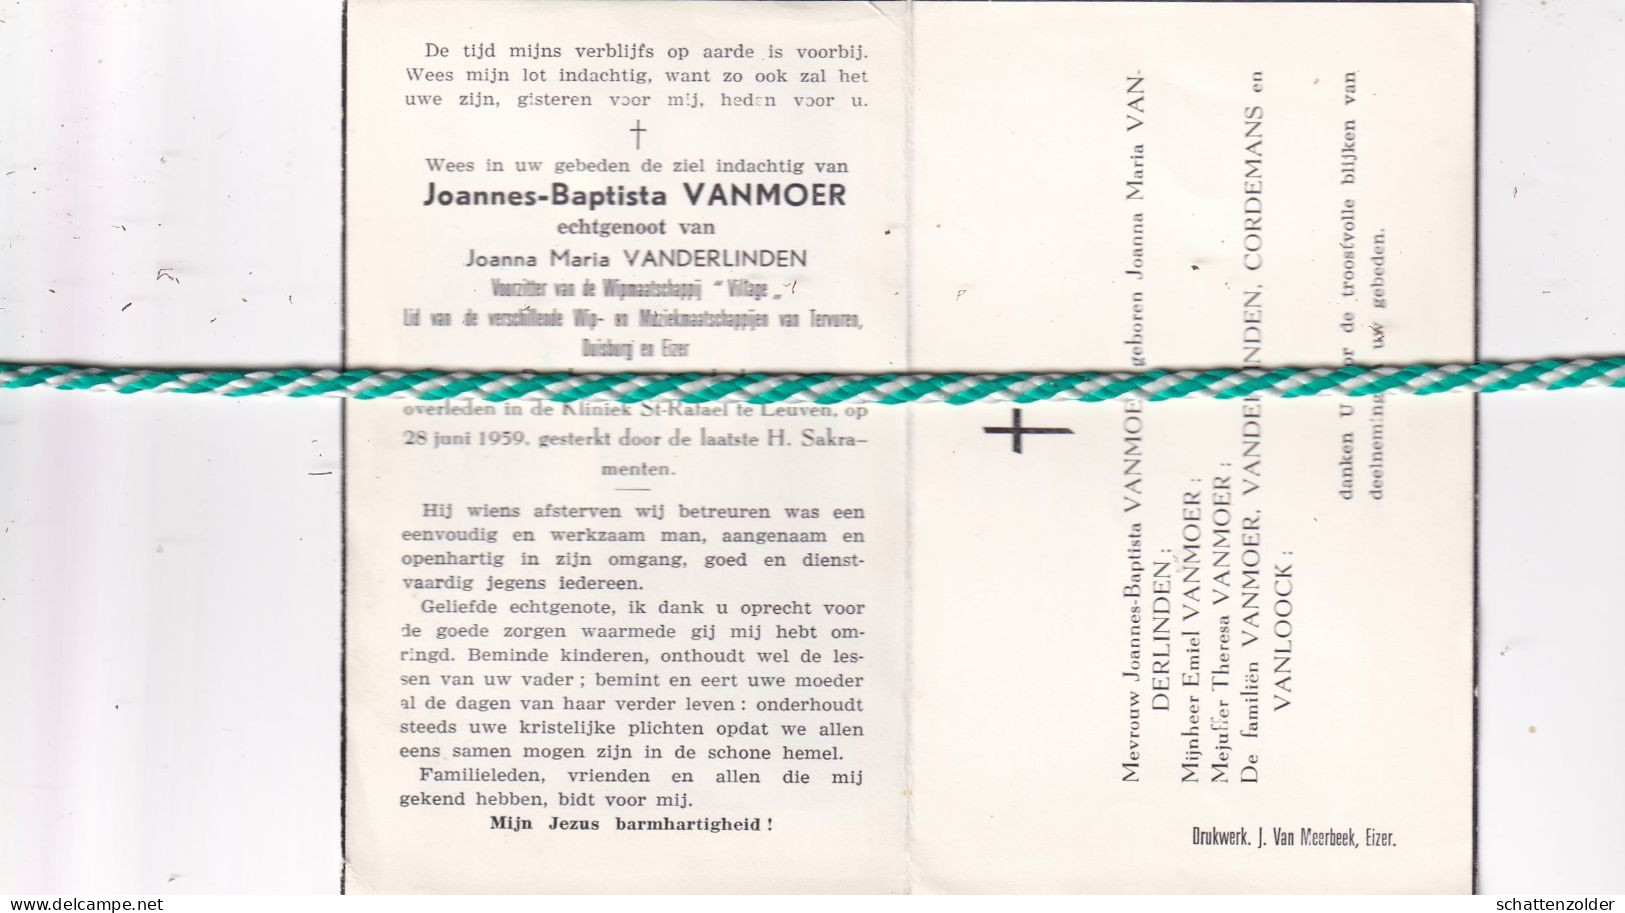 Joannes-Baptista Vanmoer-Vanderlinden, Duisburg 1908, Leuven 1959 - Todesanzeige